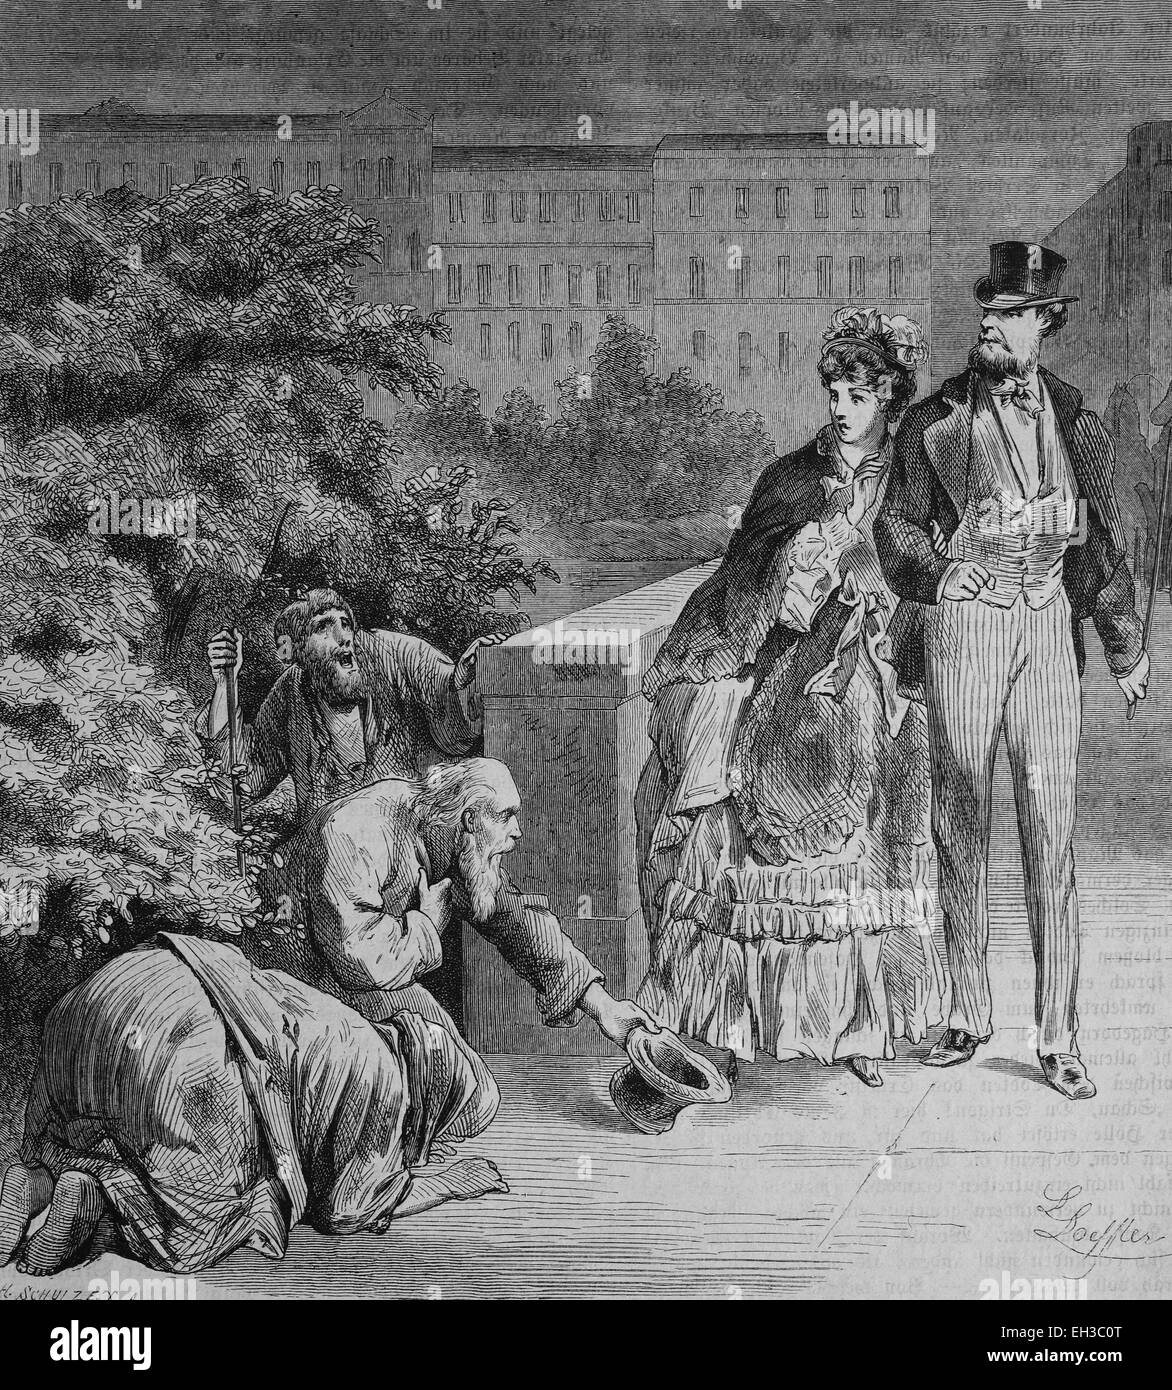 Fédération de mendiant à Riga, gravure sur bois, 1880 Banque D'Images